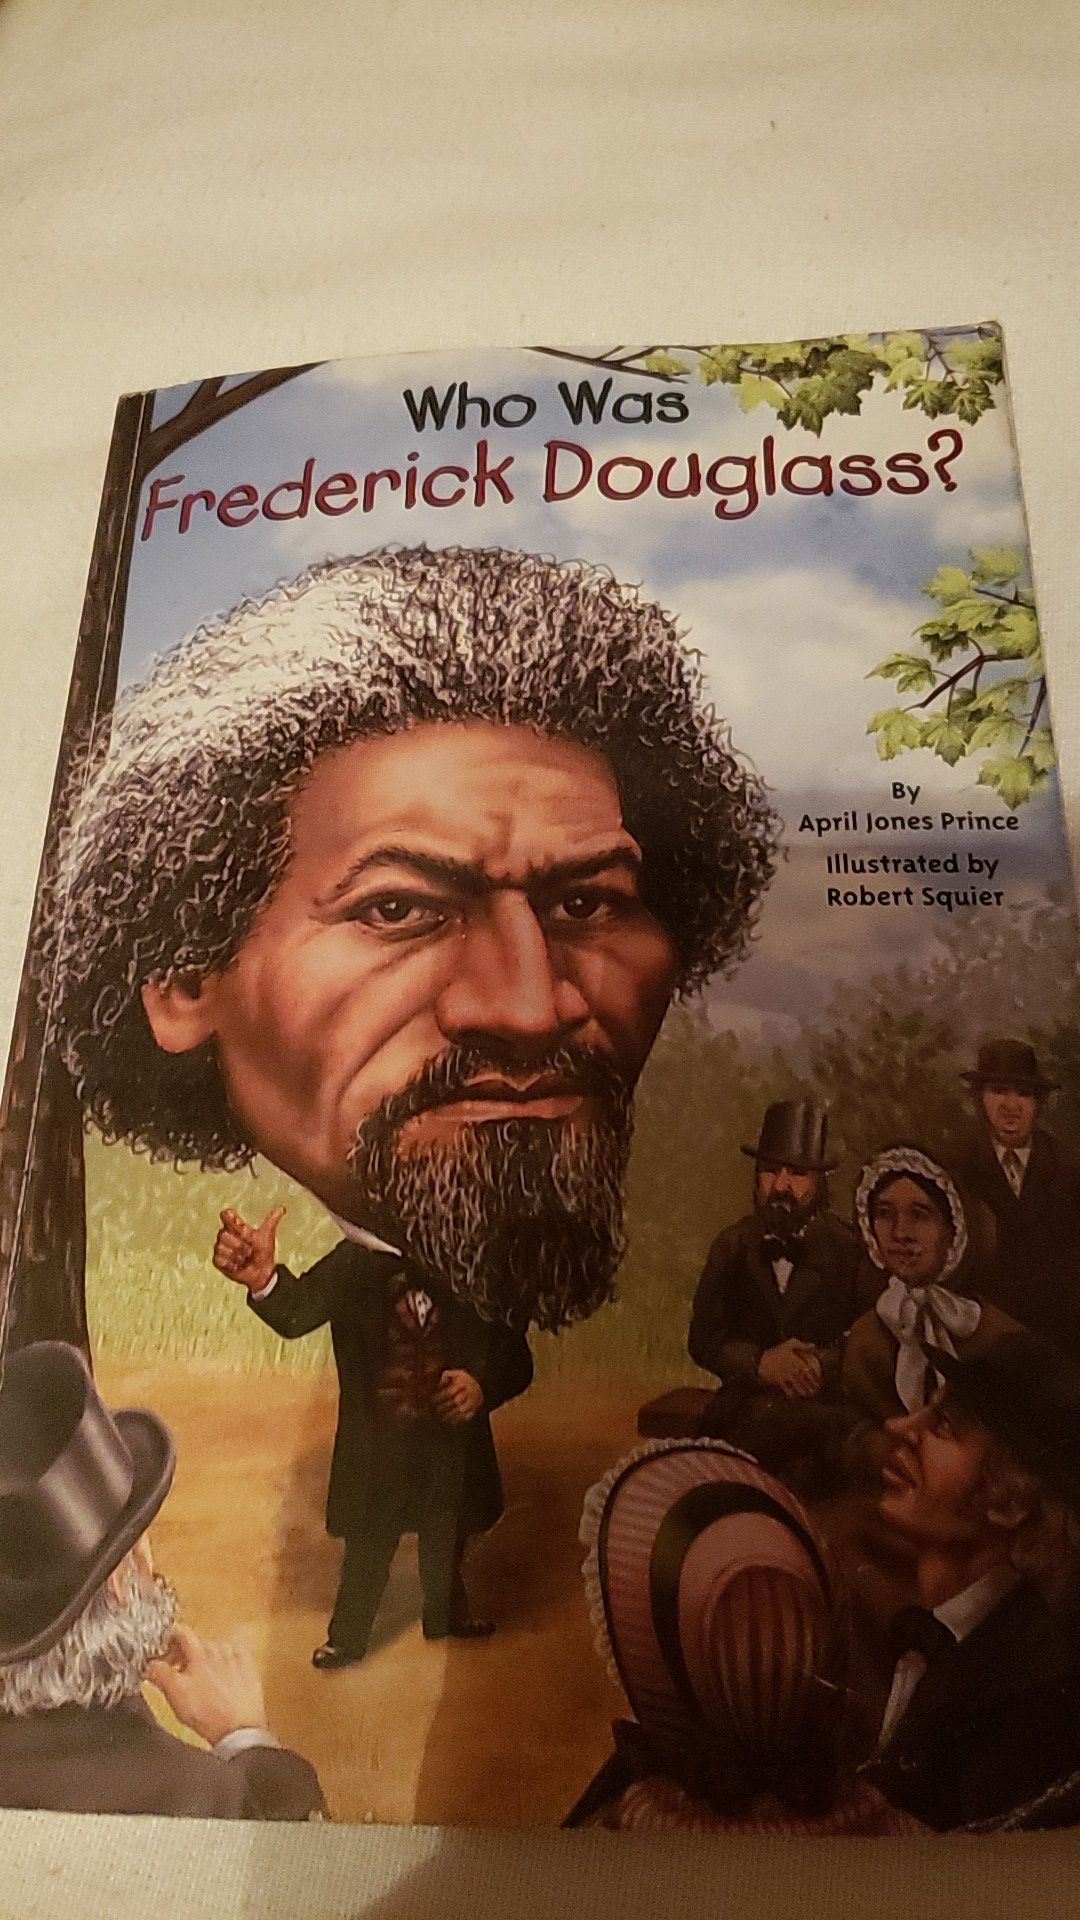 "Who was Frederick Douglas?"